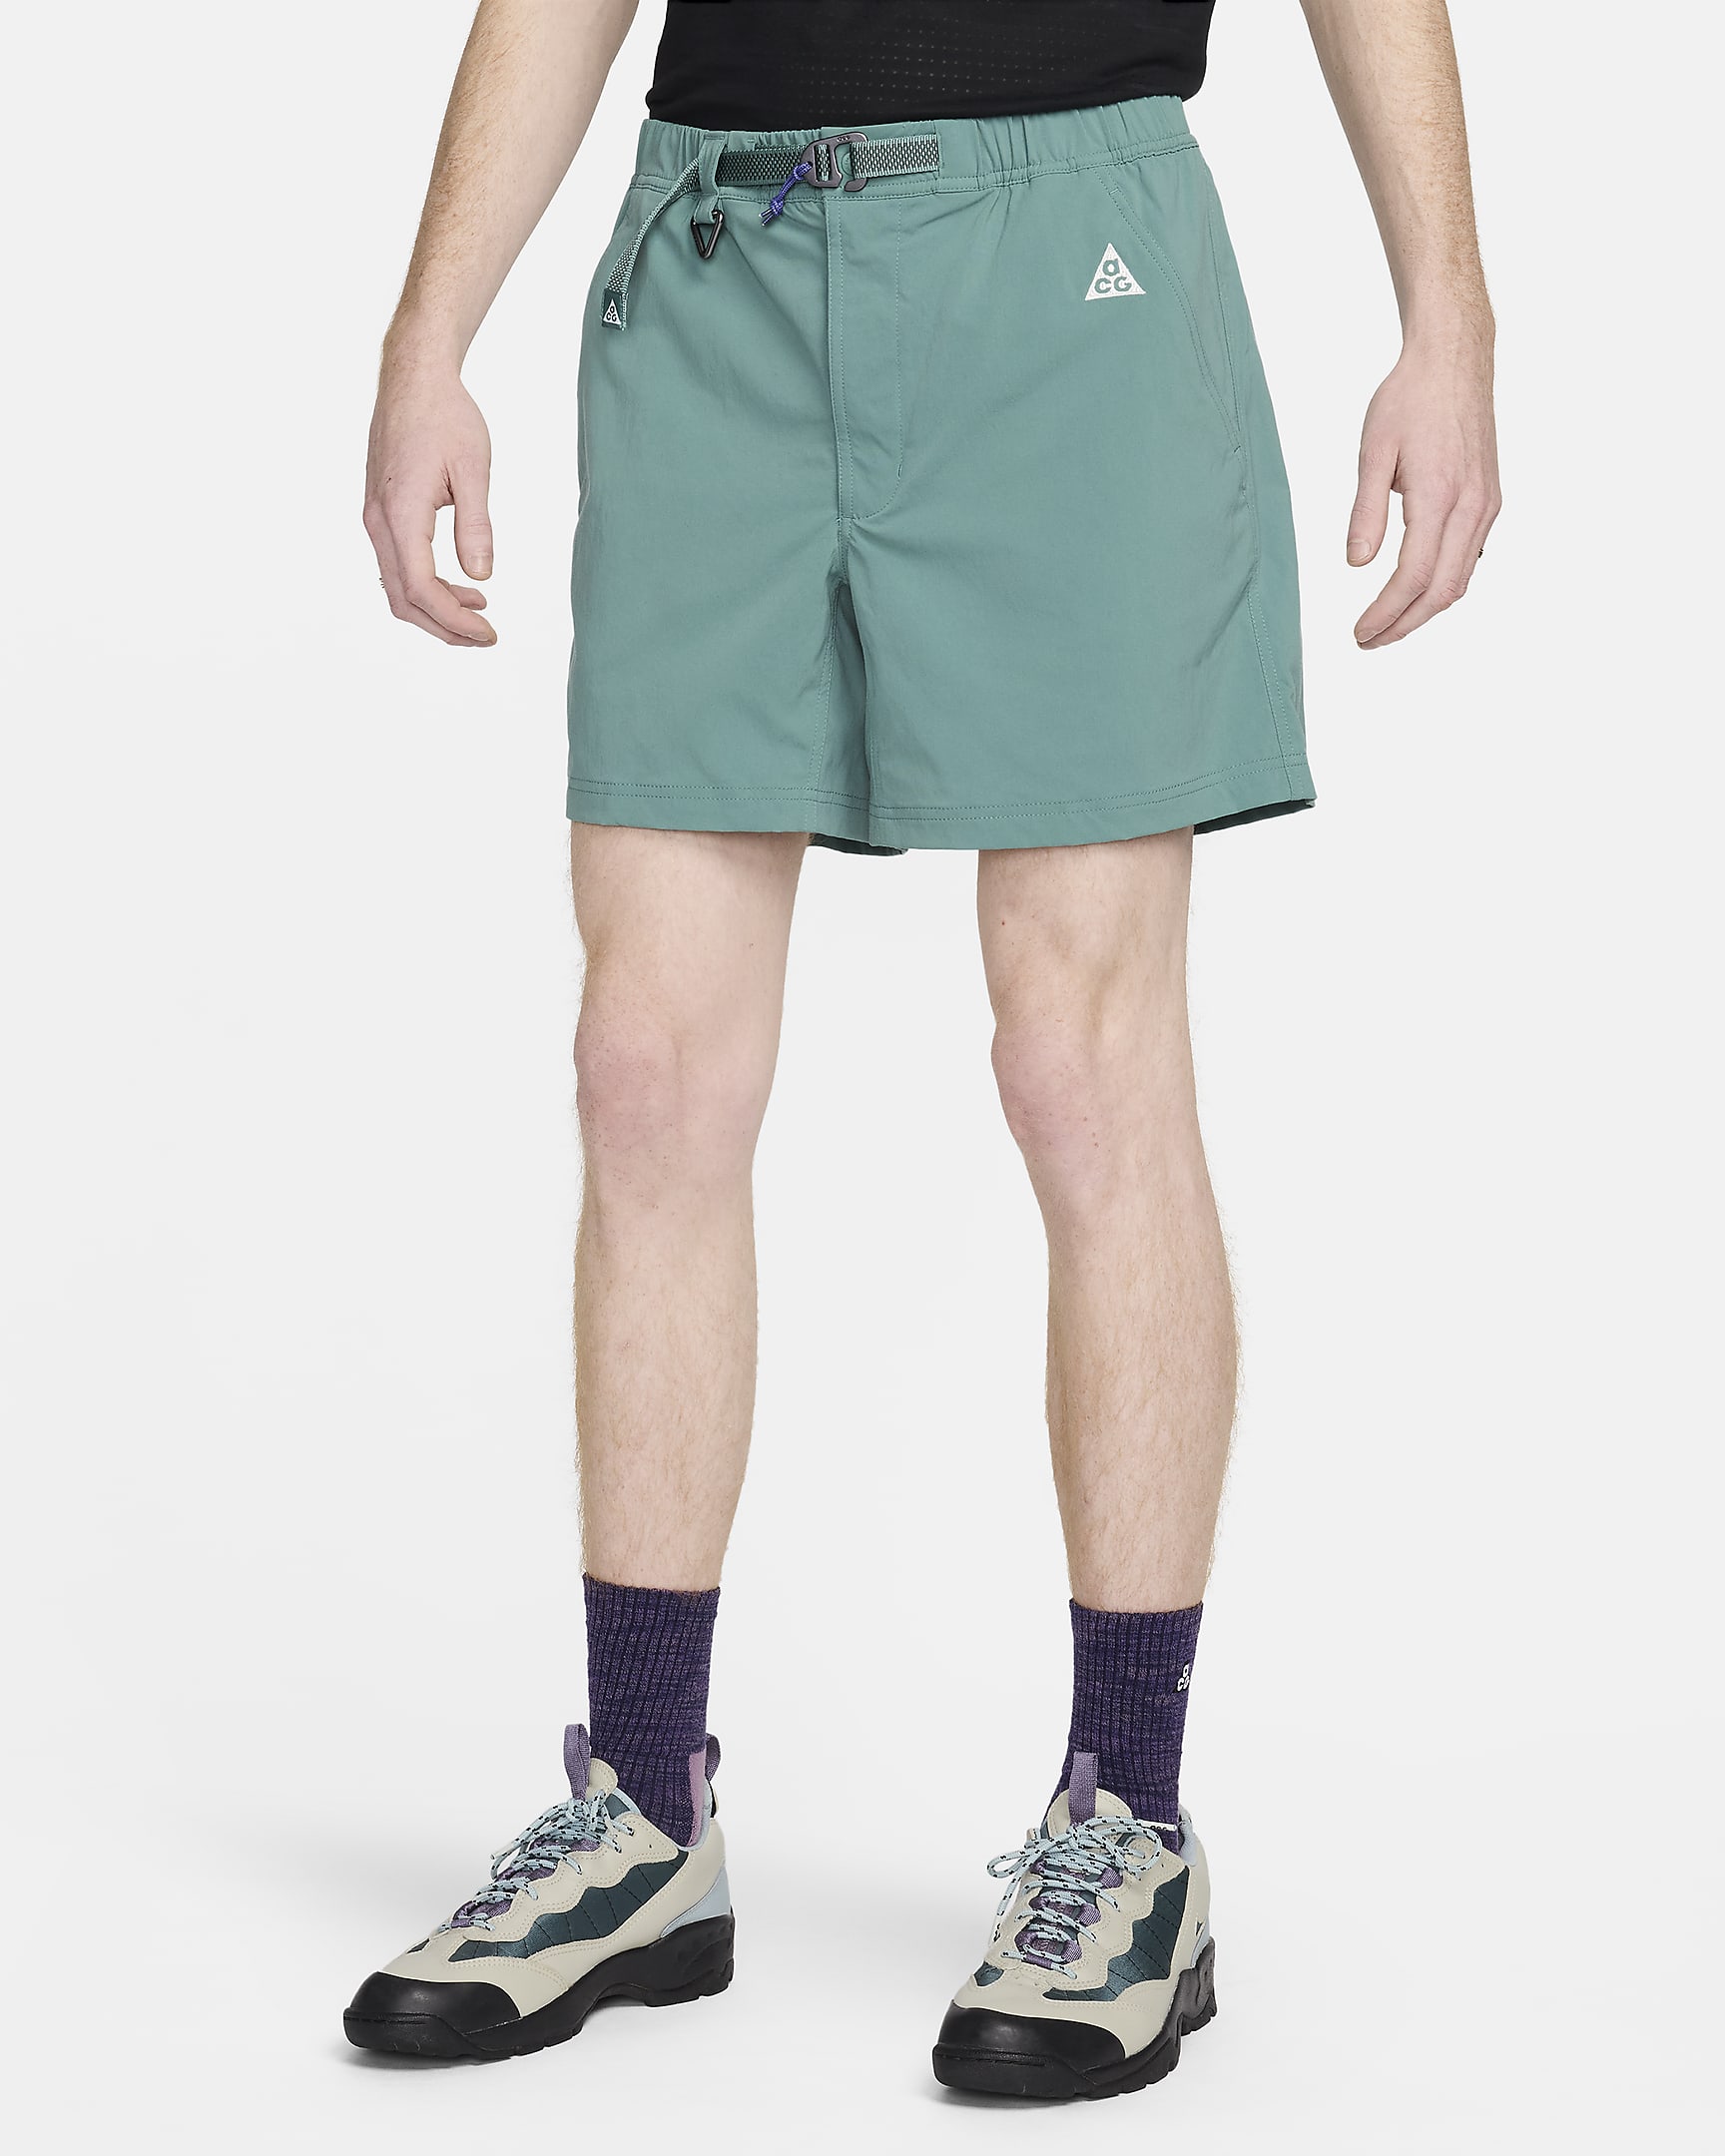 Calções de caminhada Nike ACG para homem - Bicoastal/Verde Vintage/Branco Summit